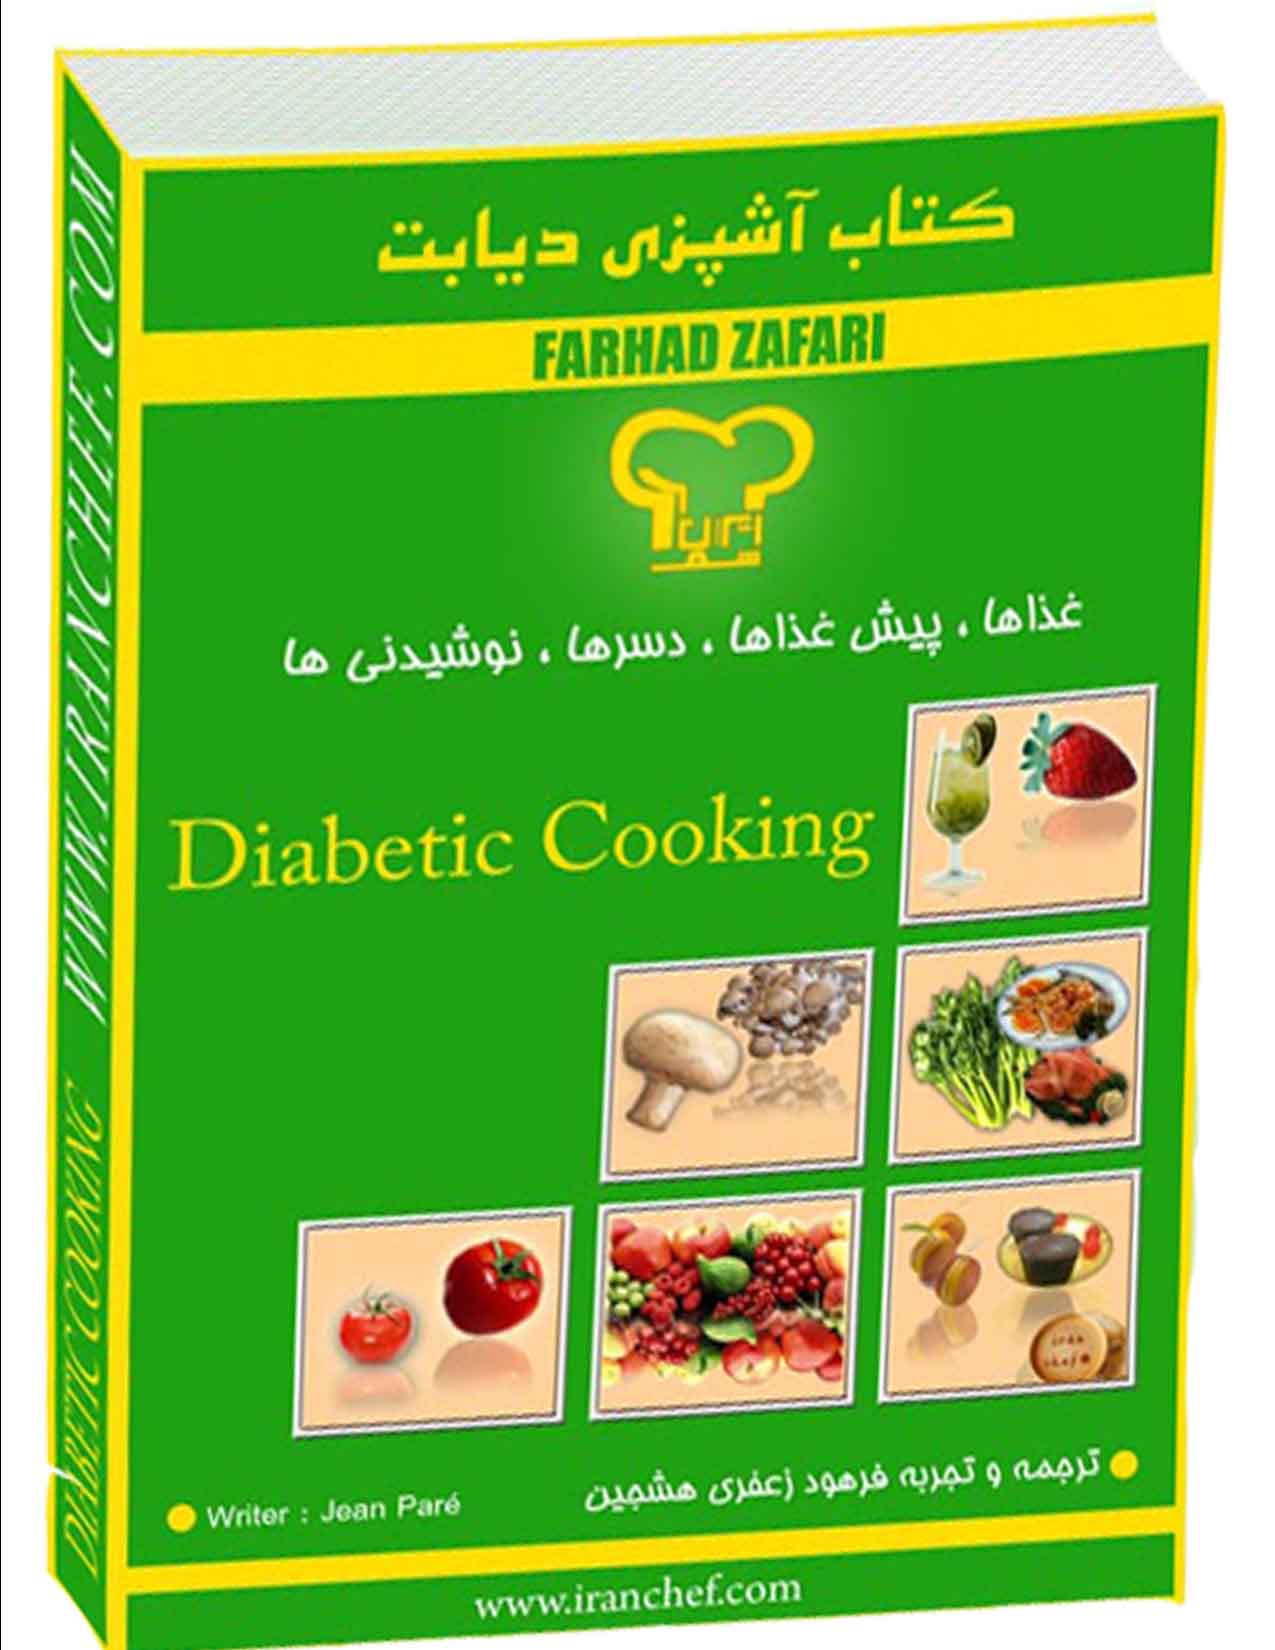 اولین کتاب آشپزی و کافی شاپ دیابتی در ایران منتشرشد.09121490154